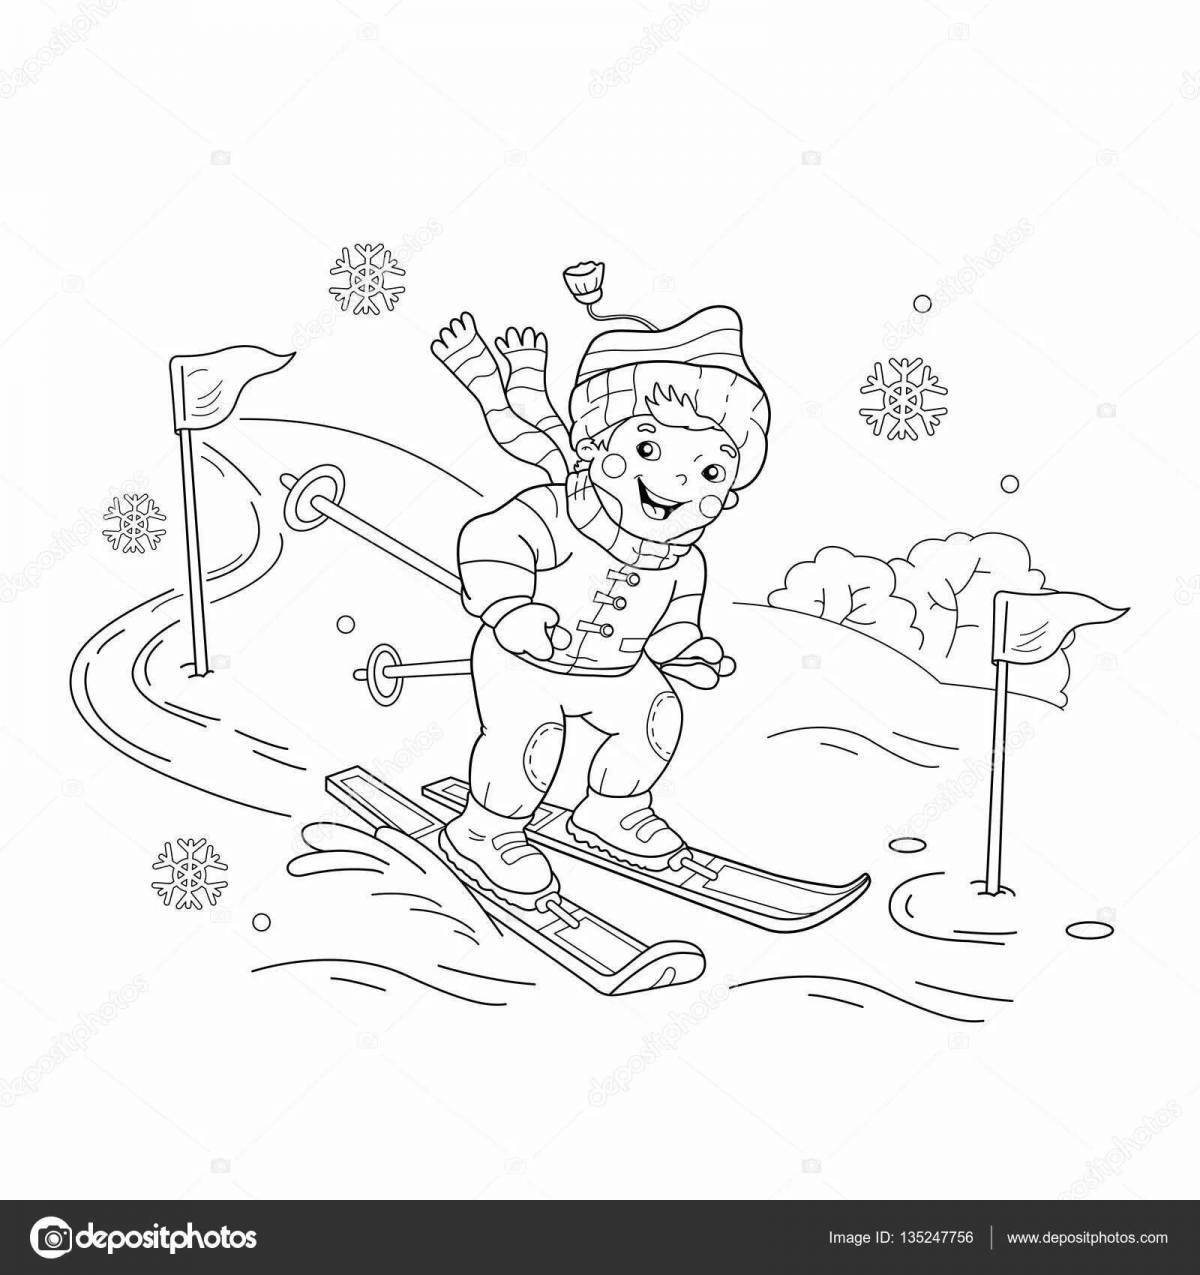 Energetic man on skis